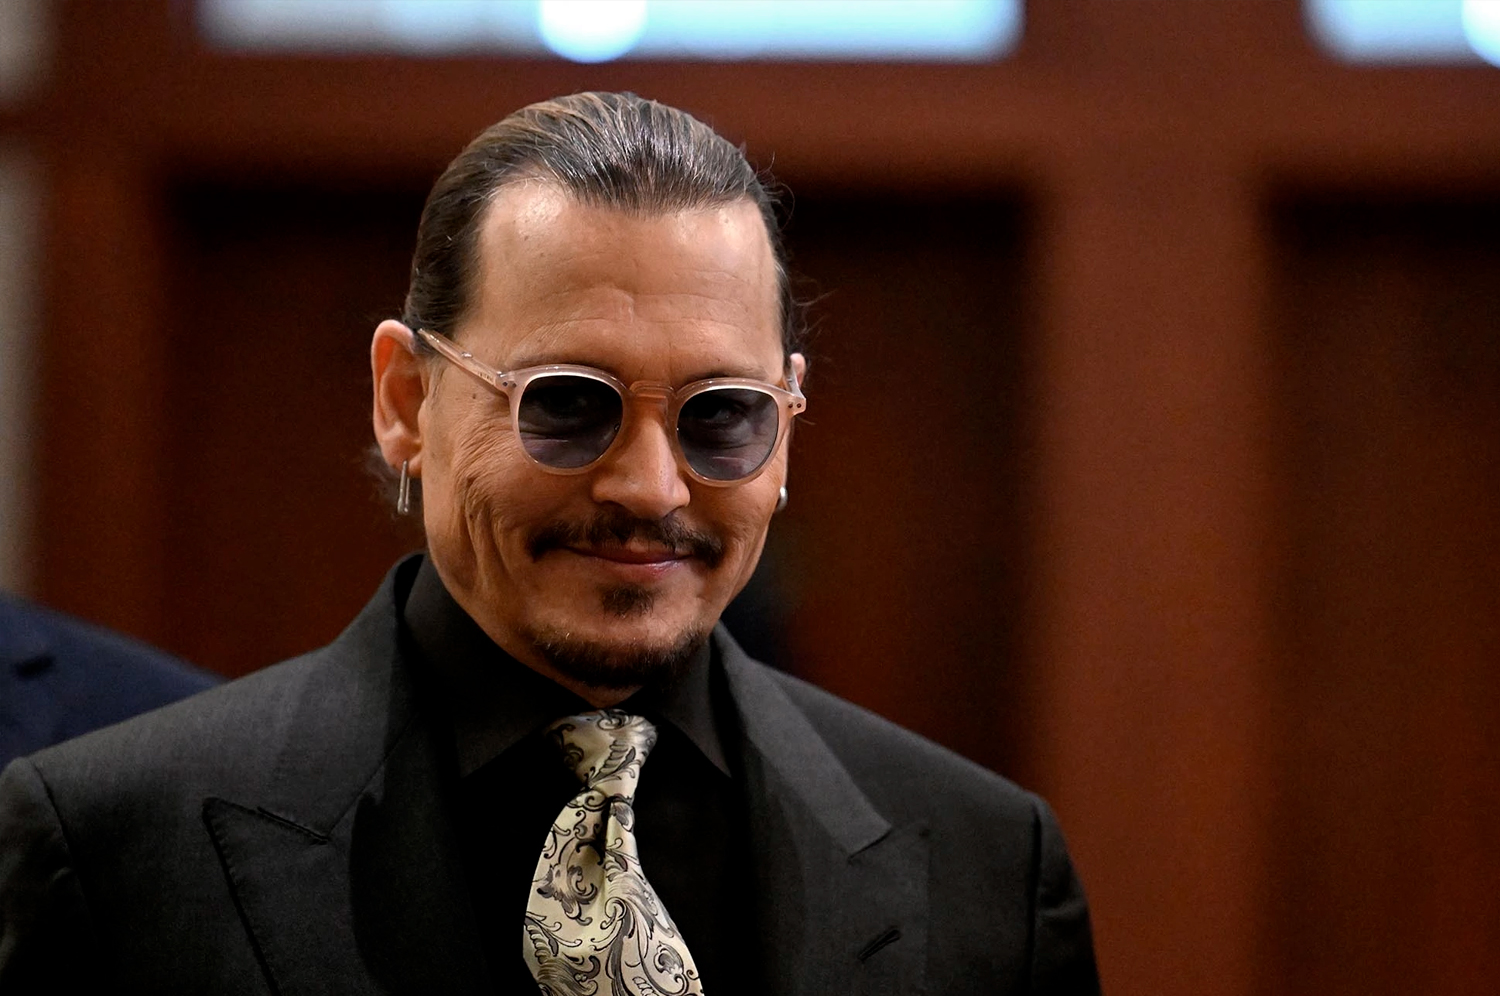 Johnny Depp | Site expõe mais de 80 possíveis mentiras ditas pelo ator durante julgamento na Virgínia